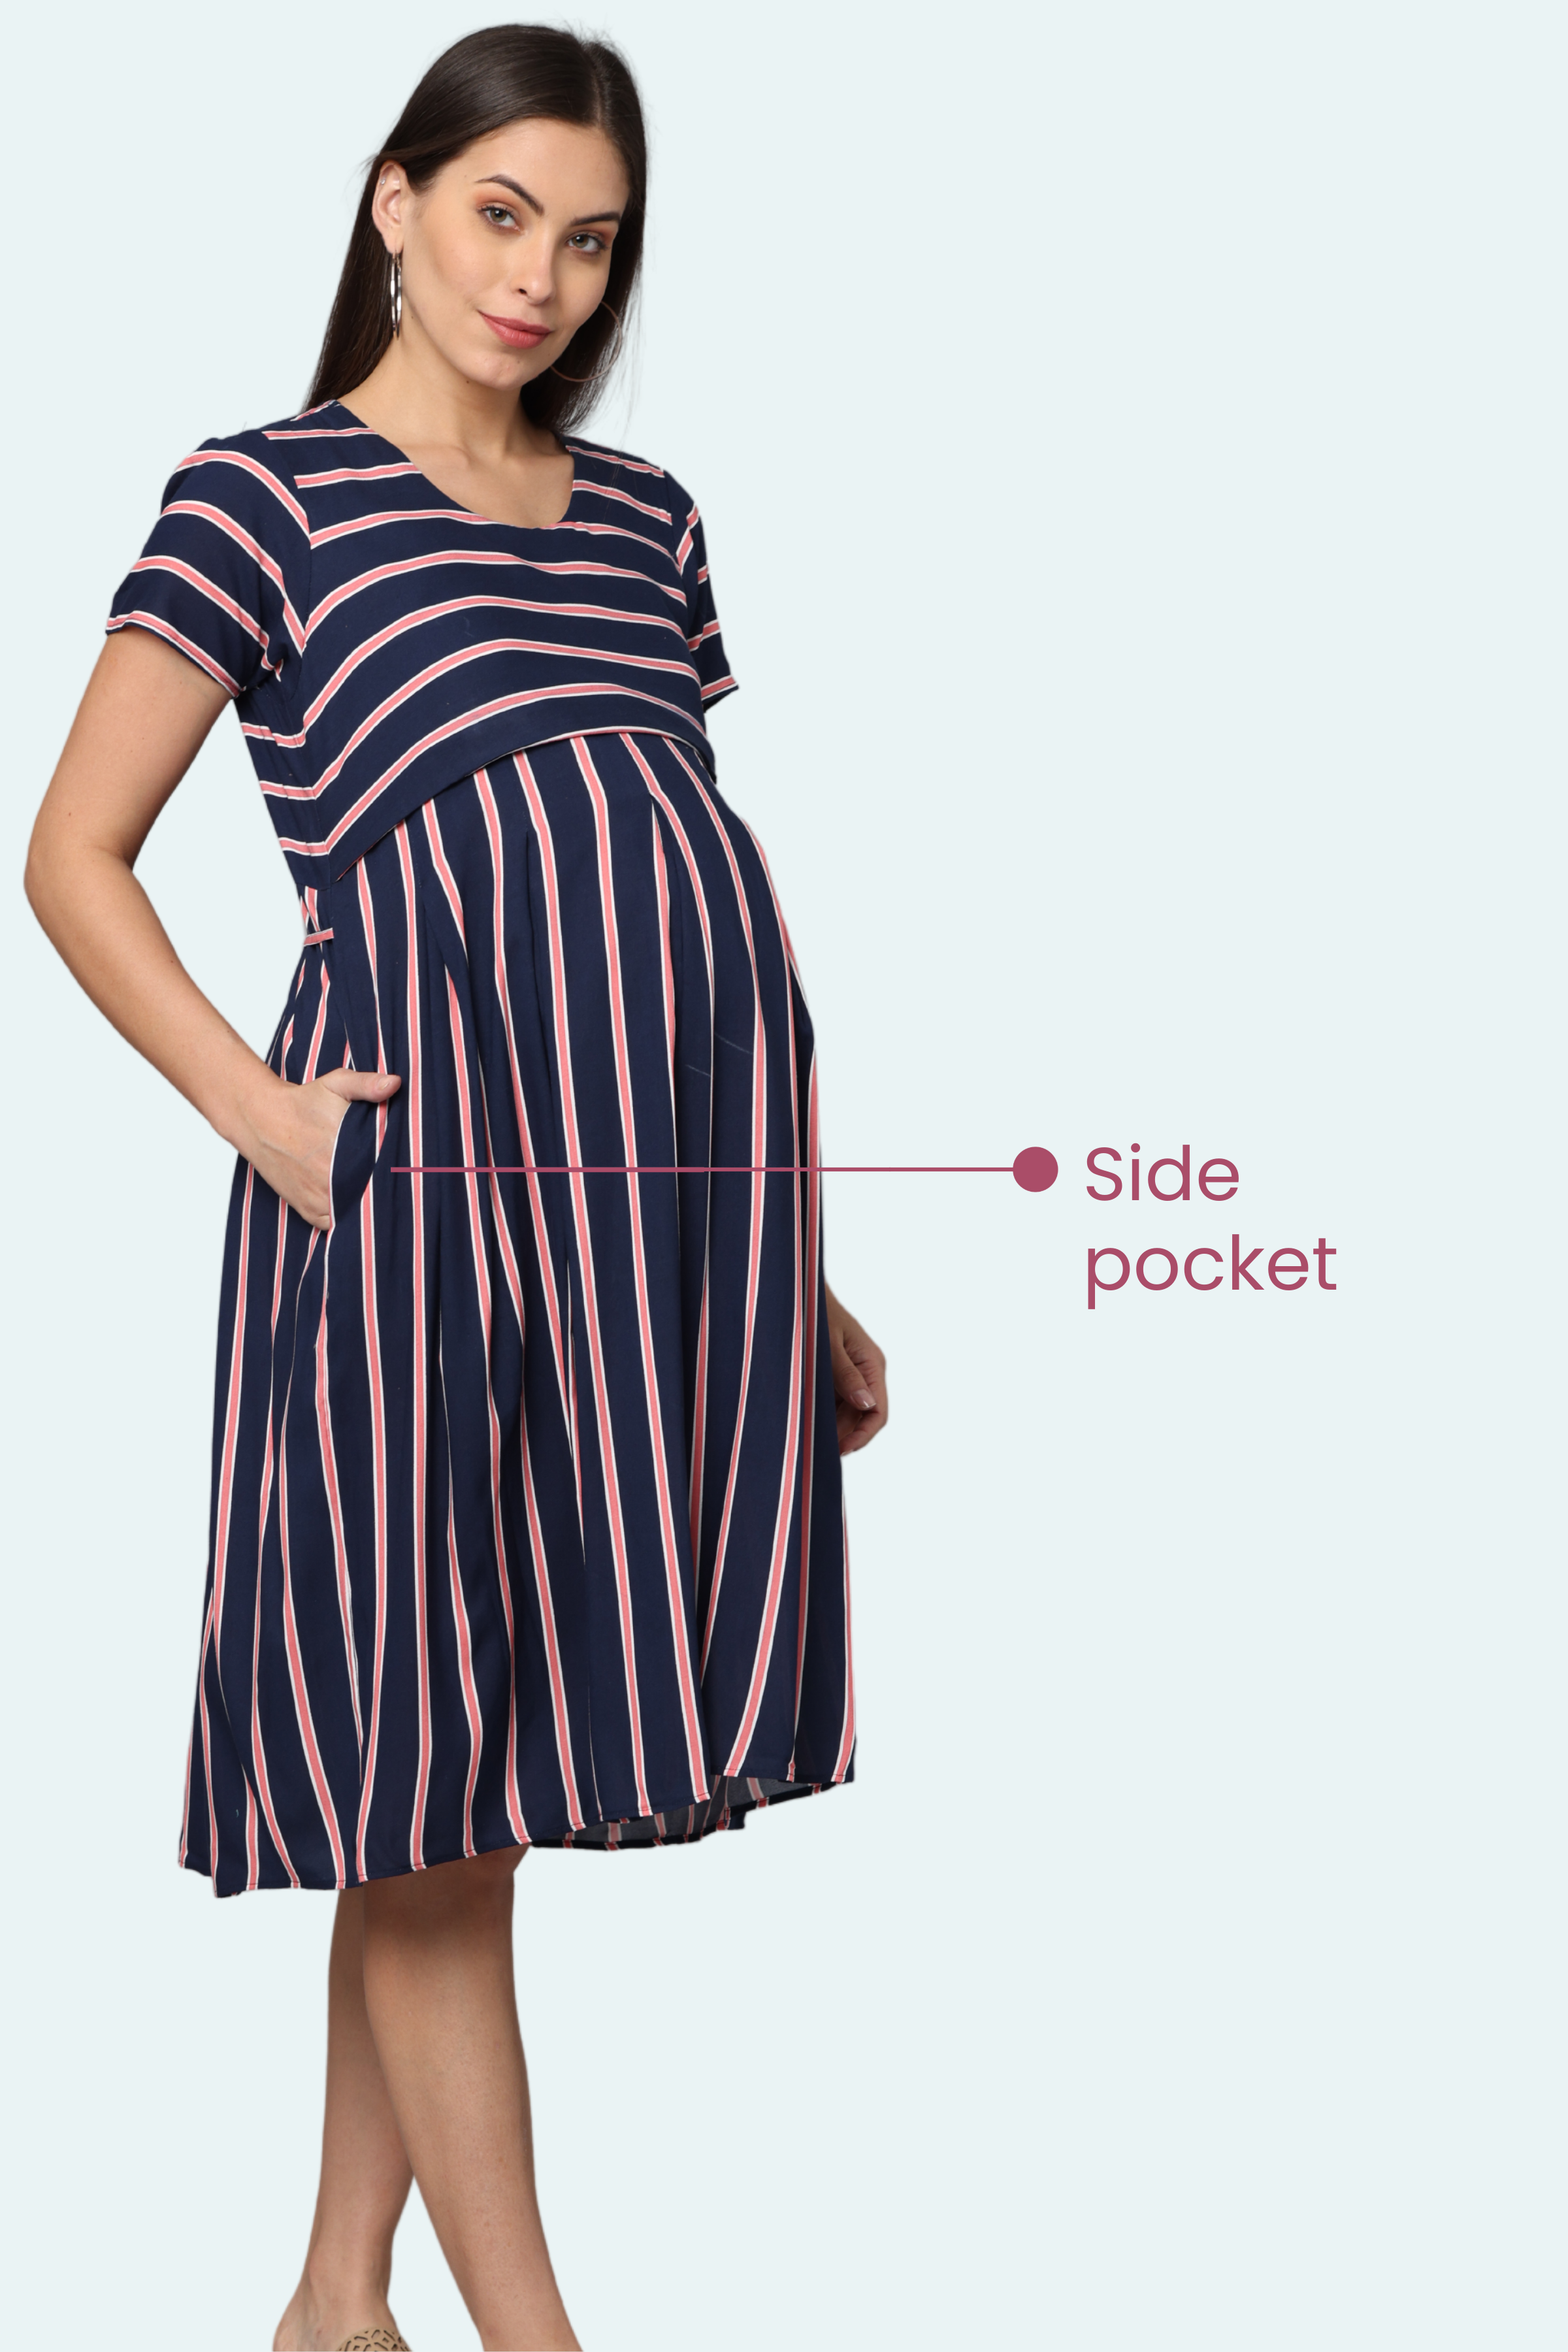 Modest Maternity Dresses/Frocks Online | Dresses for Pregnancy